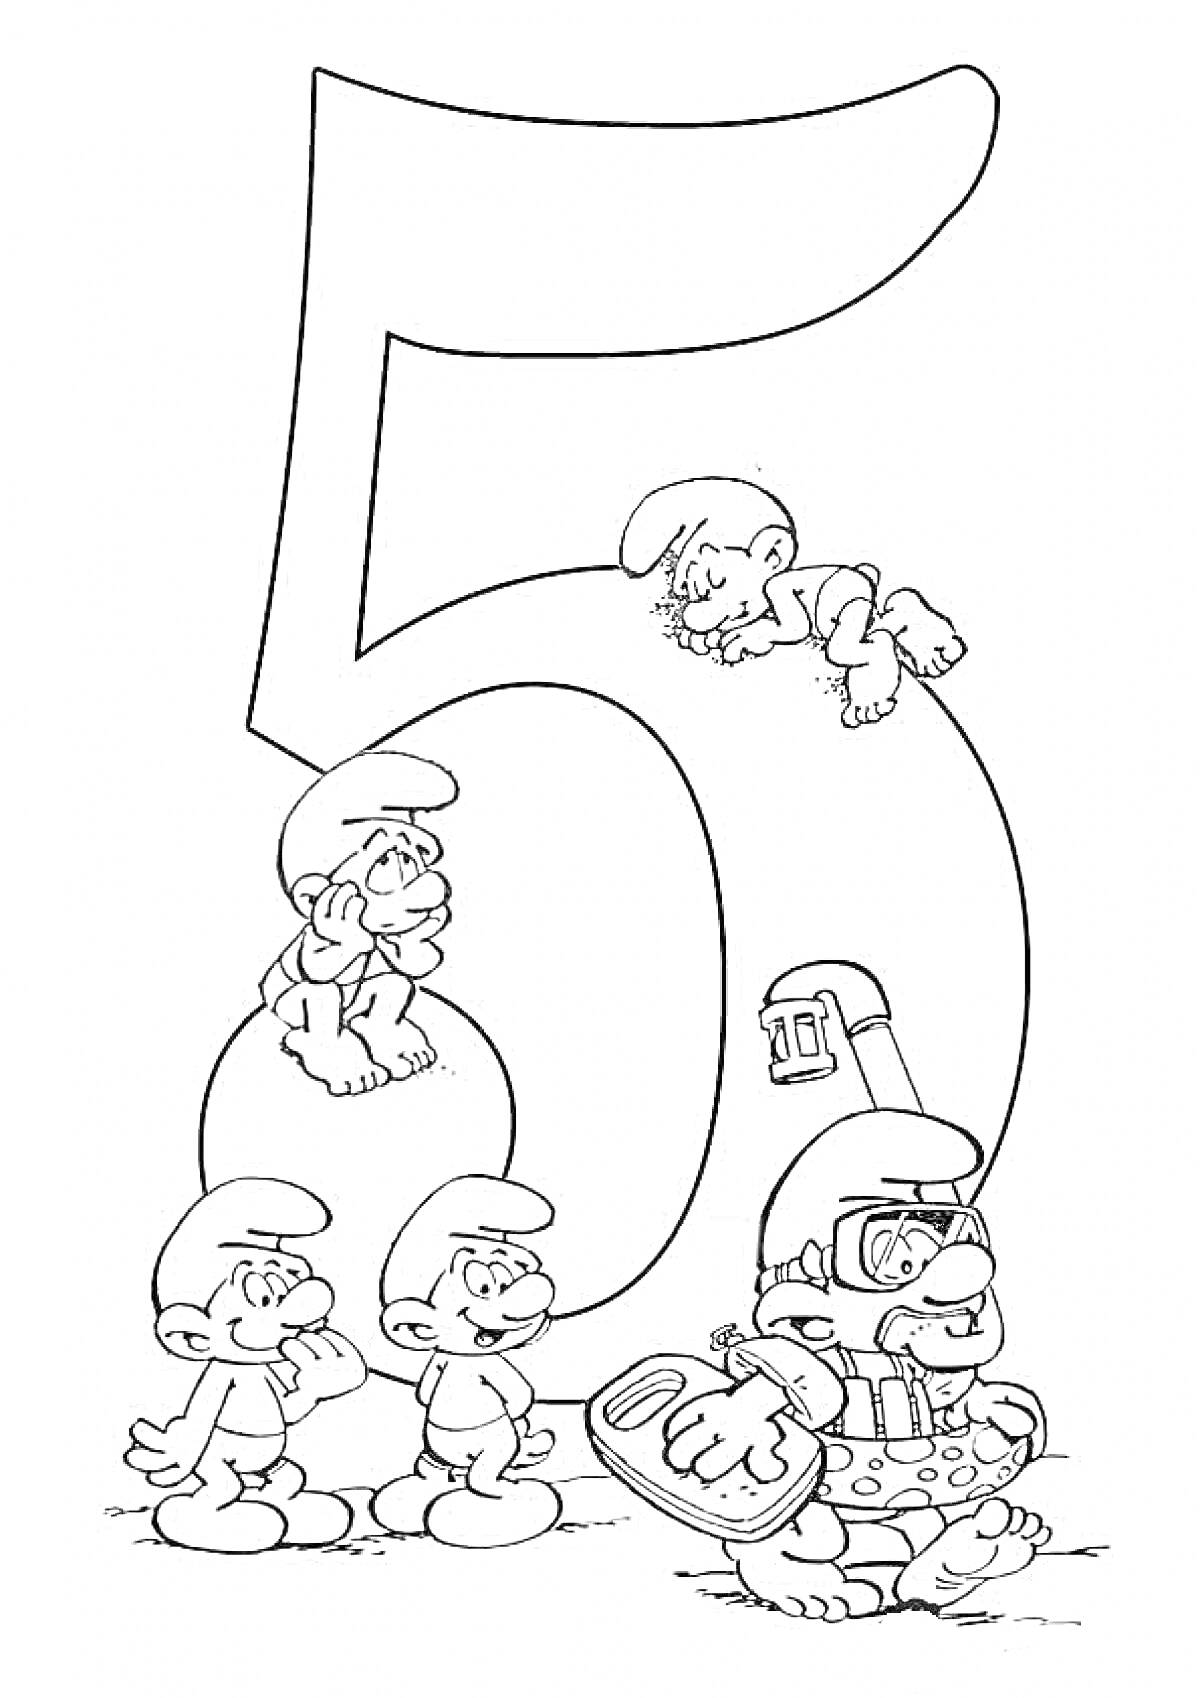 Раскраска Цифра 5 с персонажами в шляпах, один из которых в костюме аквалангиста